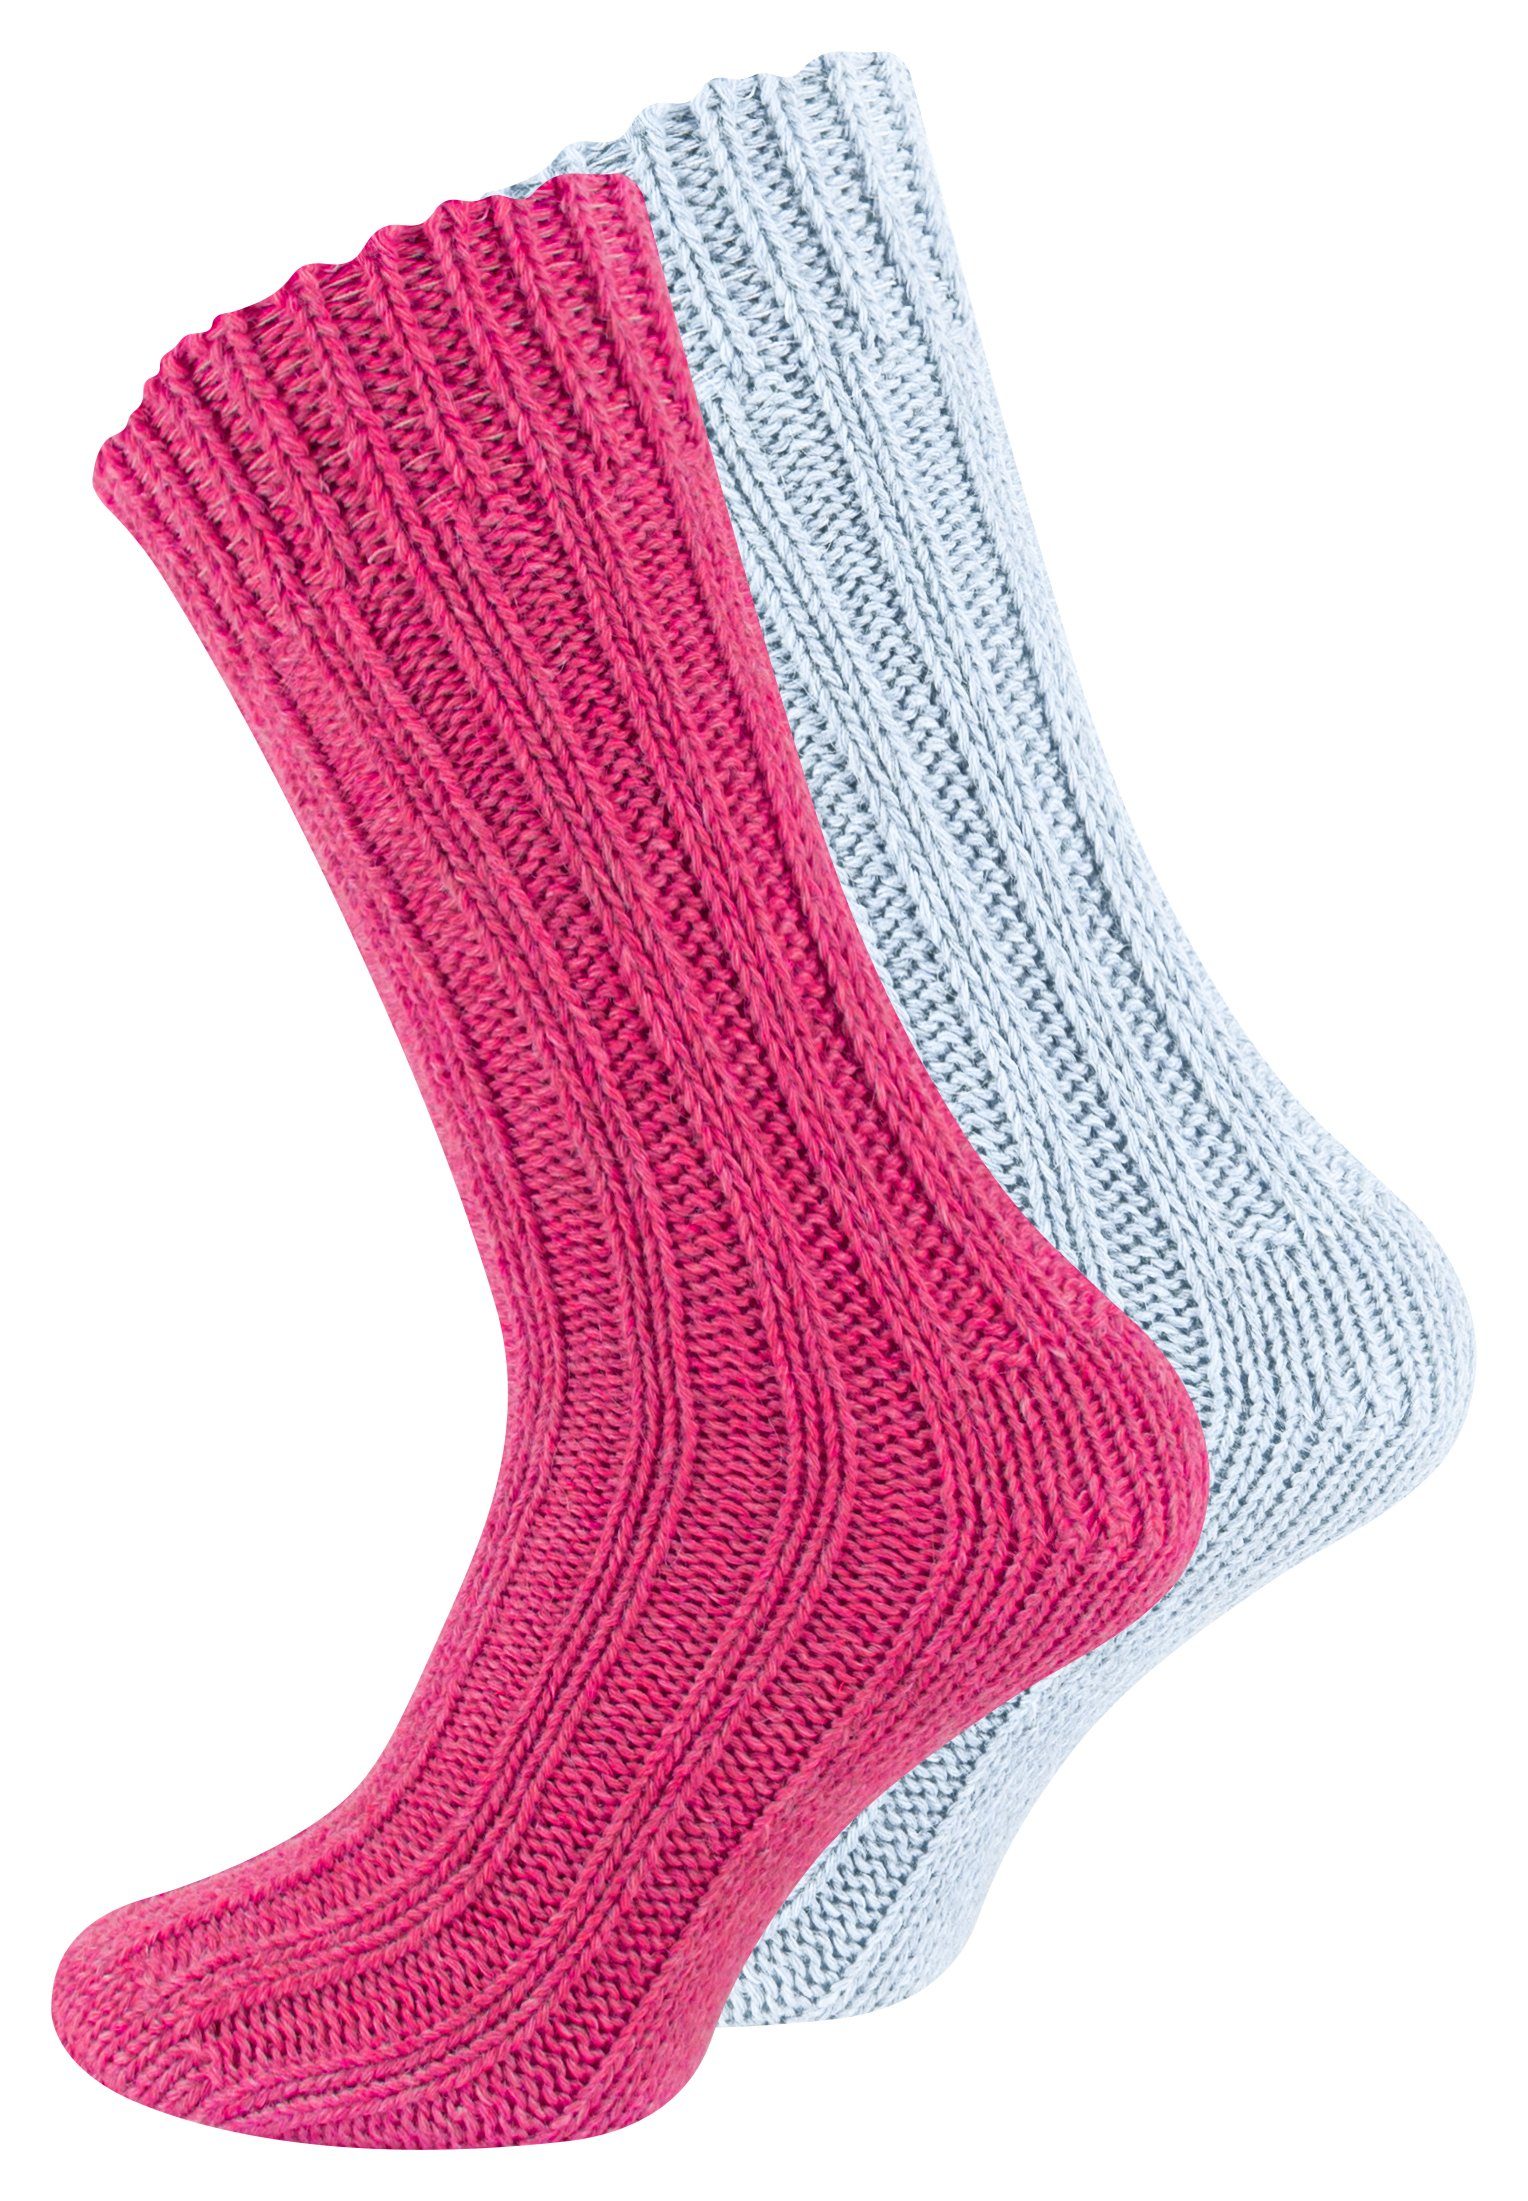 Cotton Prime® Socken Unisex Alpakasocken (4-Paar) ökologisch gefärbt und vorgewaschen Pink/Hellblau